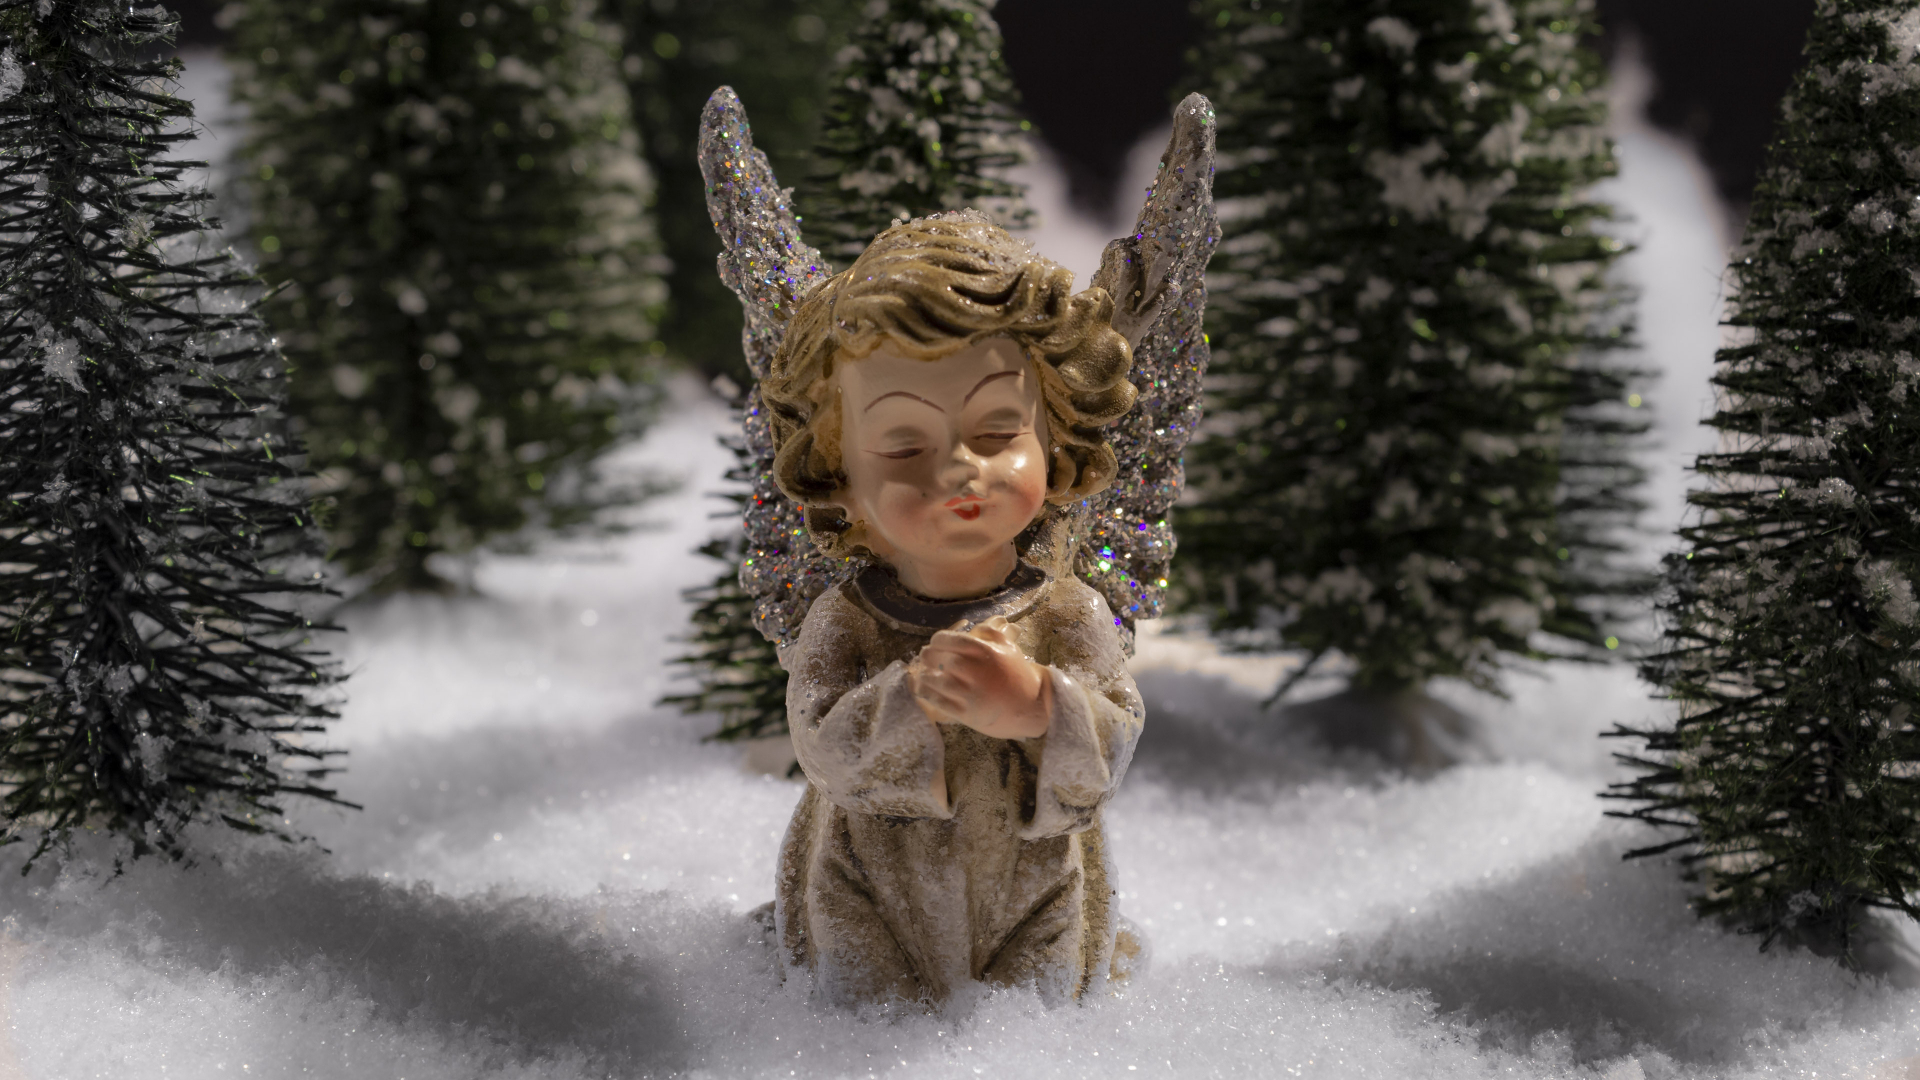 Hintergrundbilder | Weihnachten Knieender Engel ganzes Hintergrundbilder Engel